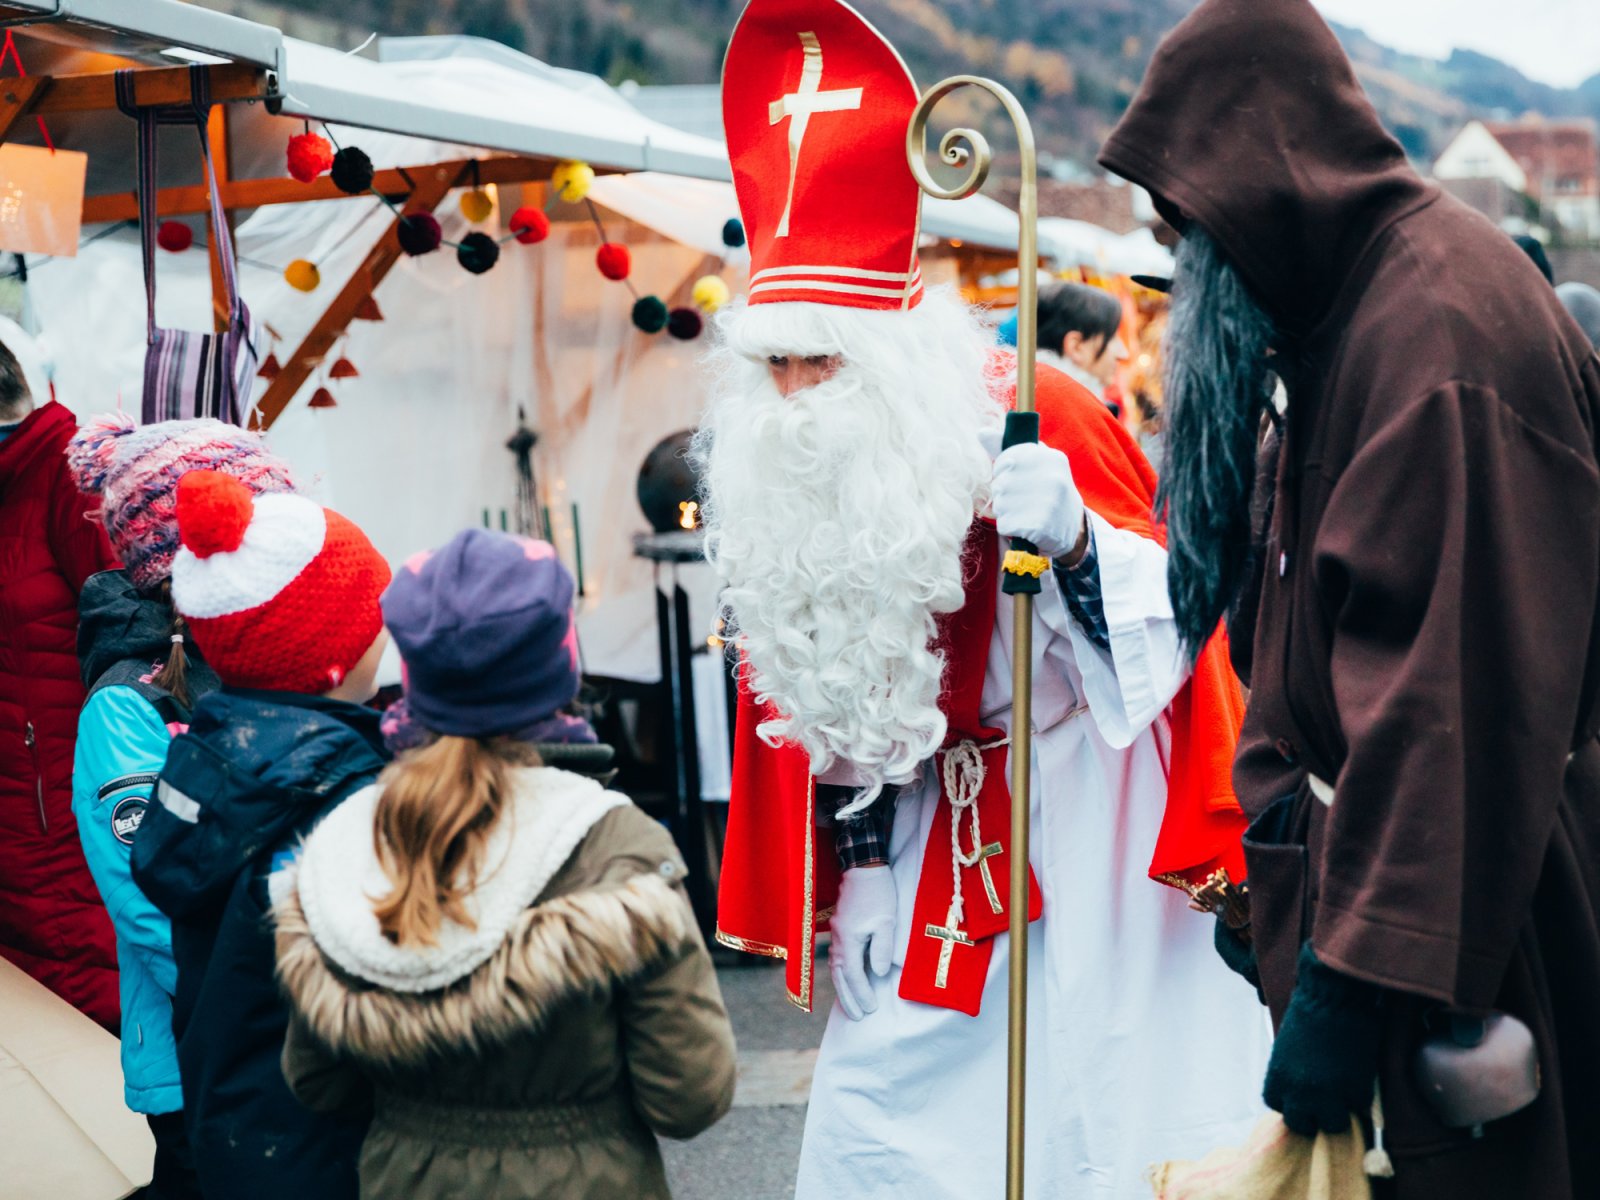 Samichlaus Swiss Santa Claus and Schmutzli